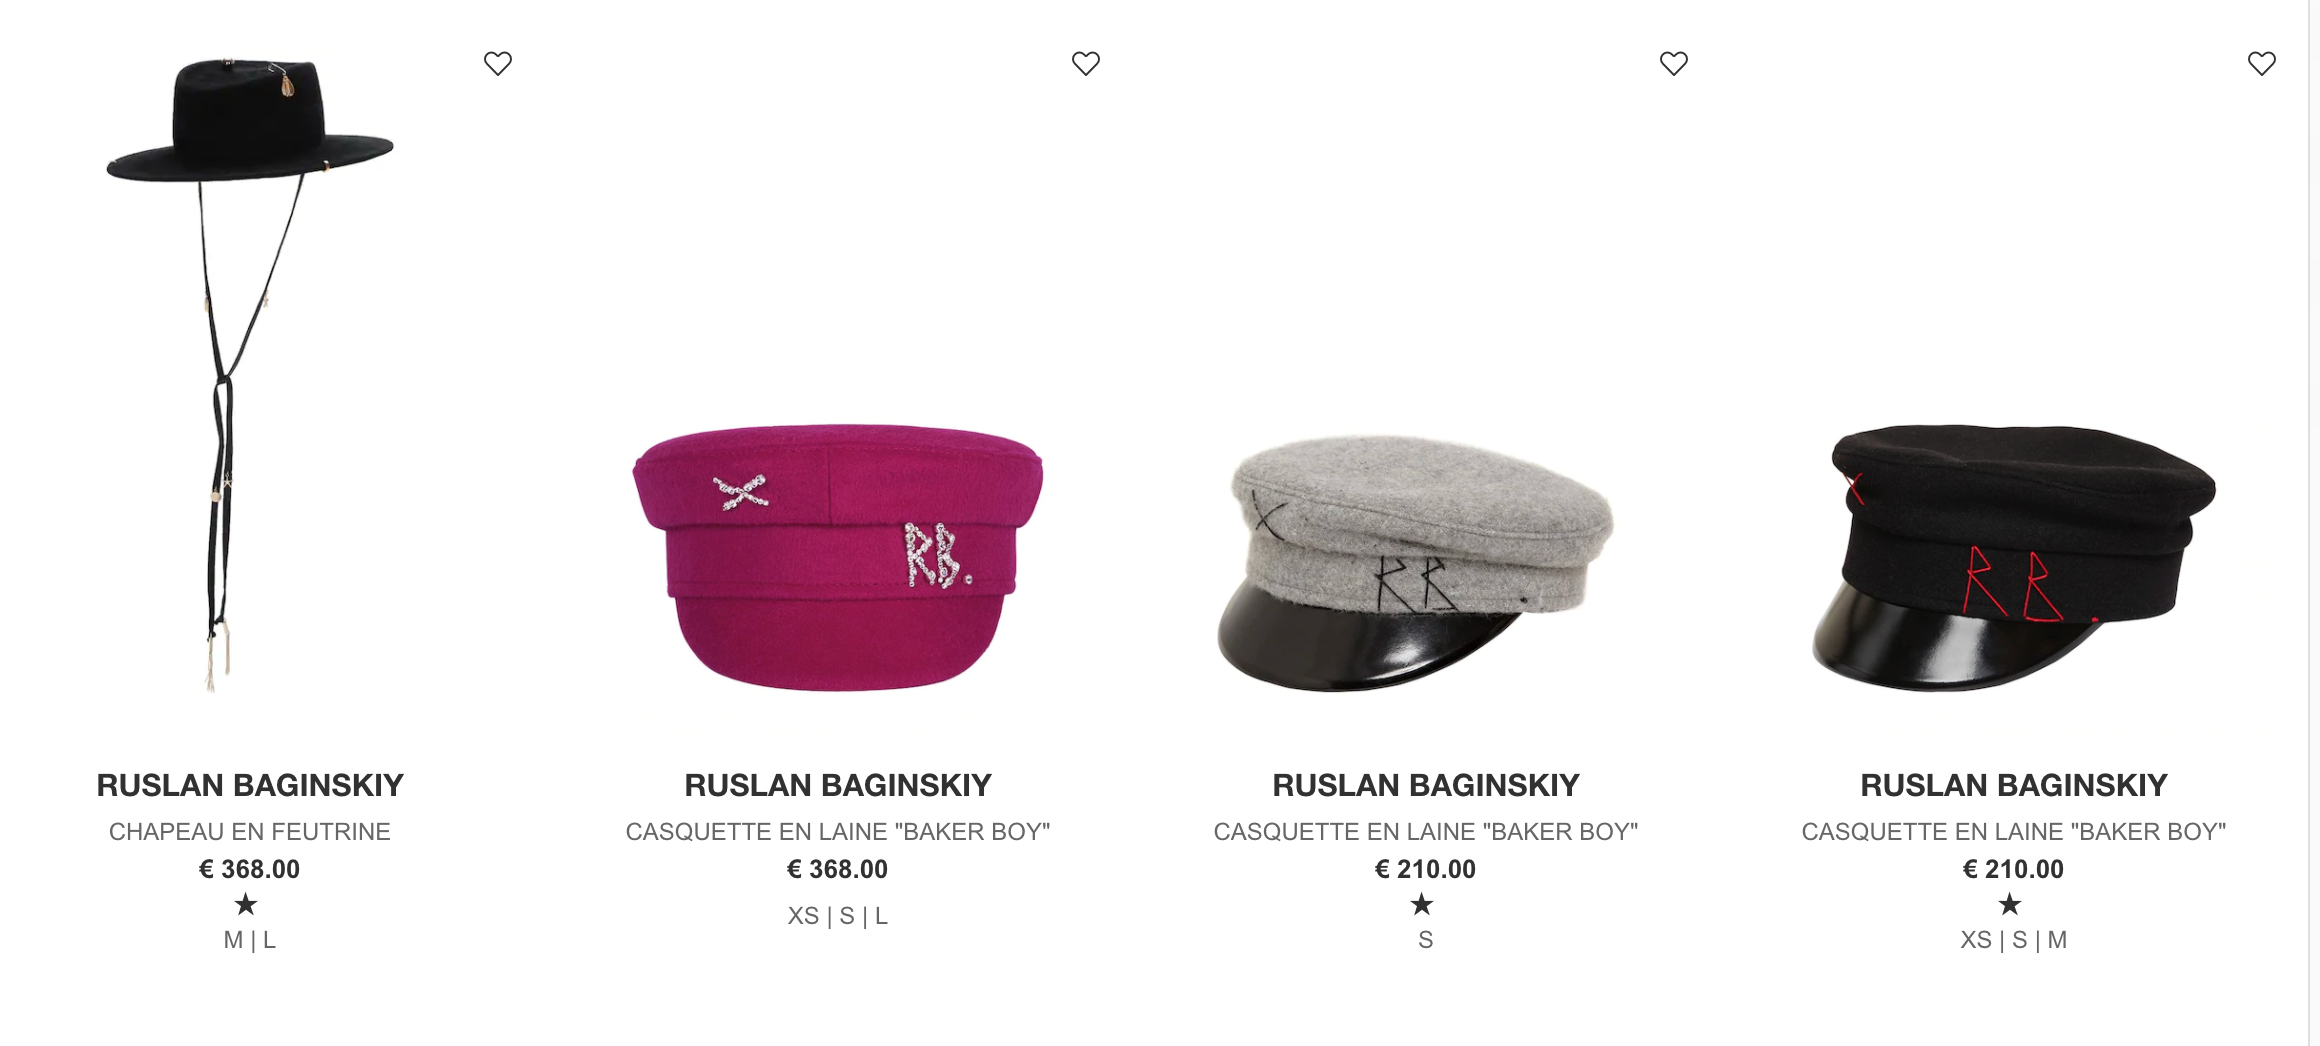 昆凌周冬雨同款报童帽Ruslan Baginskiy家的帽子现全场6折，还有几款 